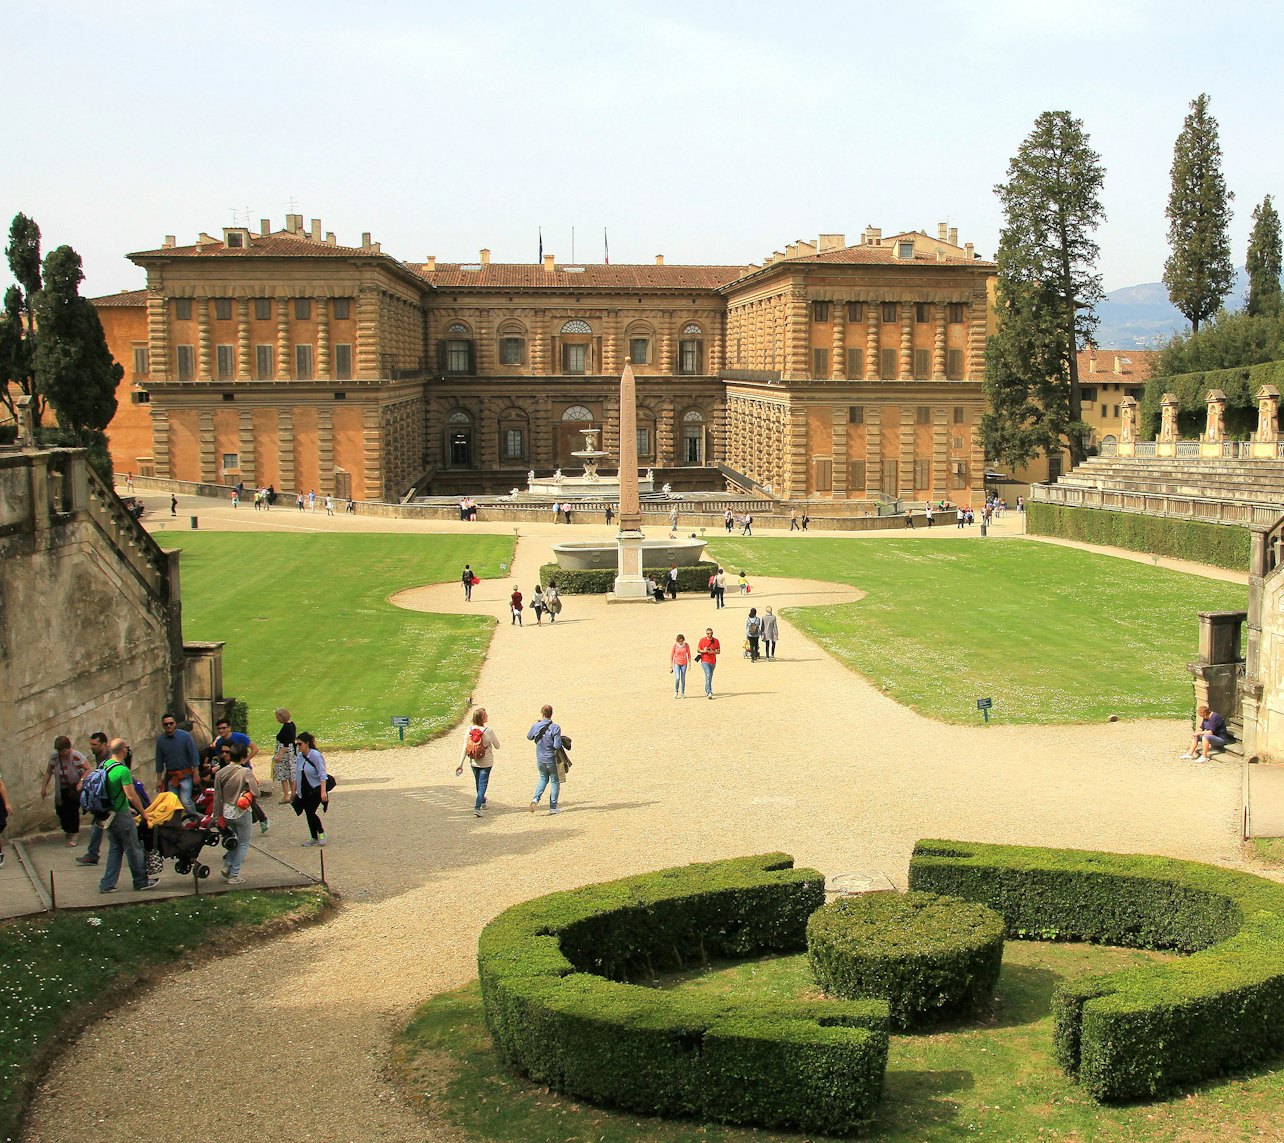 Galería Uffizi, Palacio Pitti y Jardín de Bóboli: Sin colas - Alojamientos en Florencia